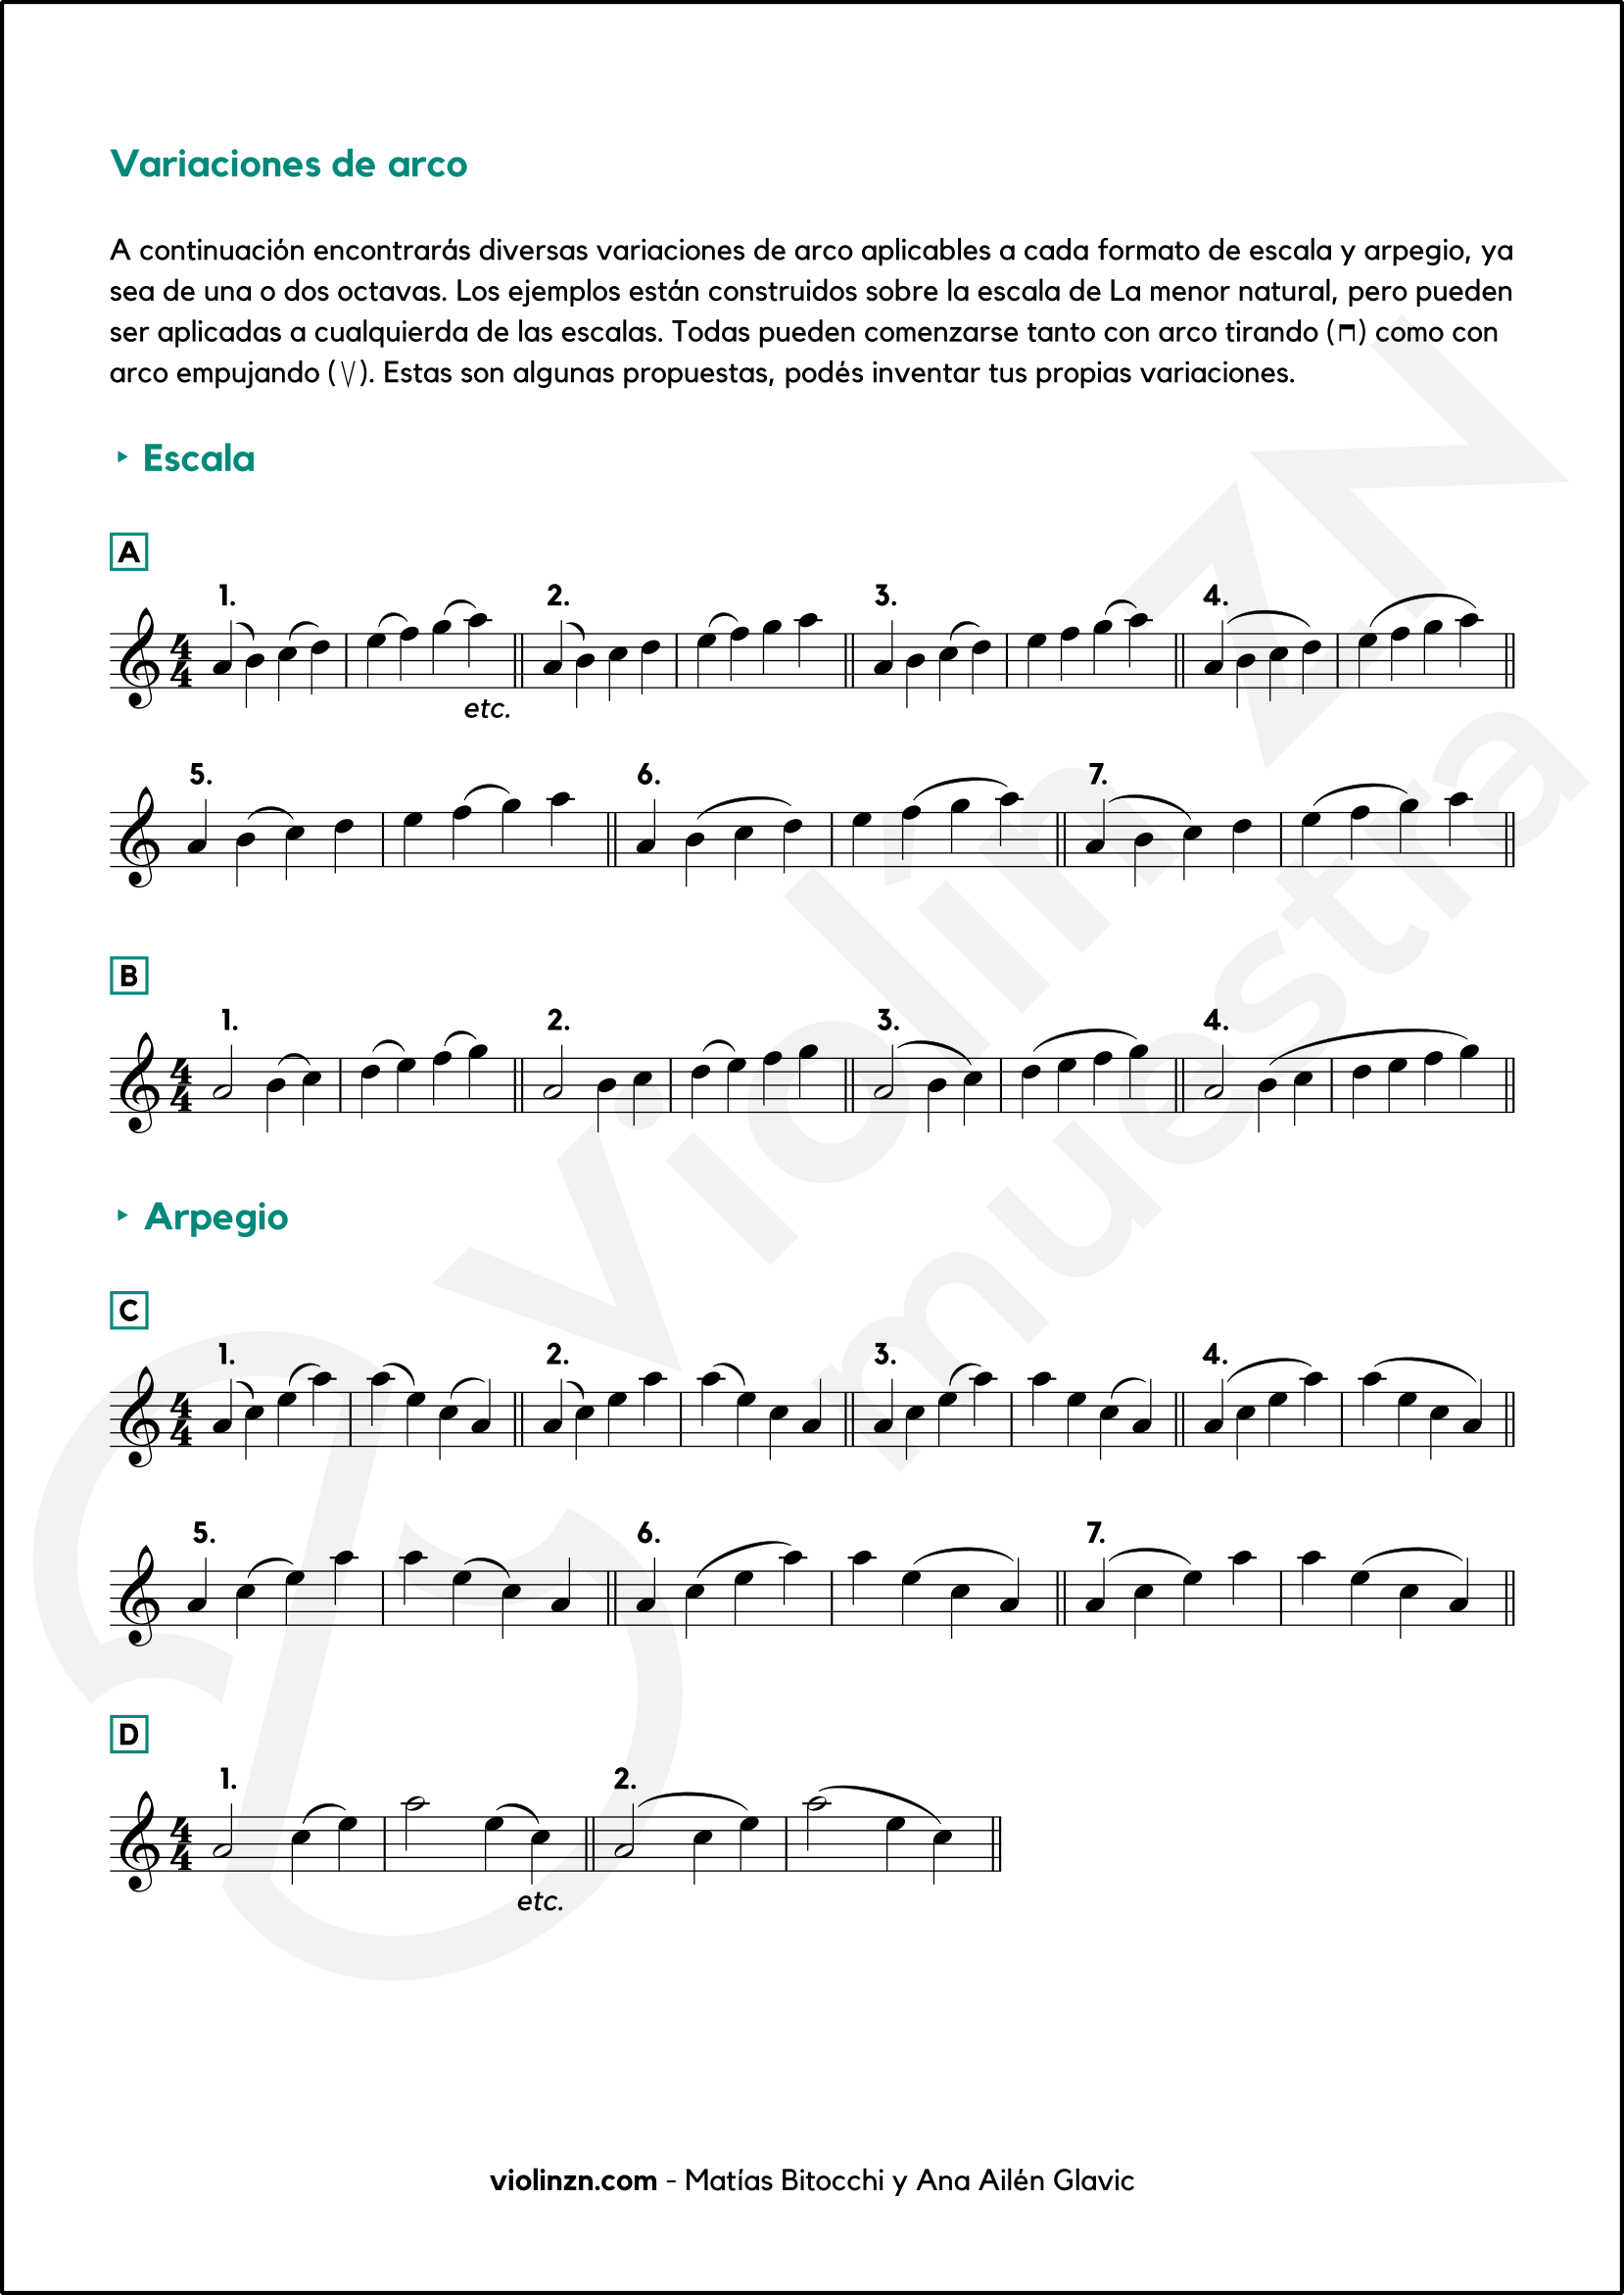 Variaciones para las escalas en el violín